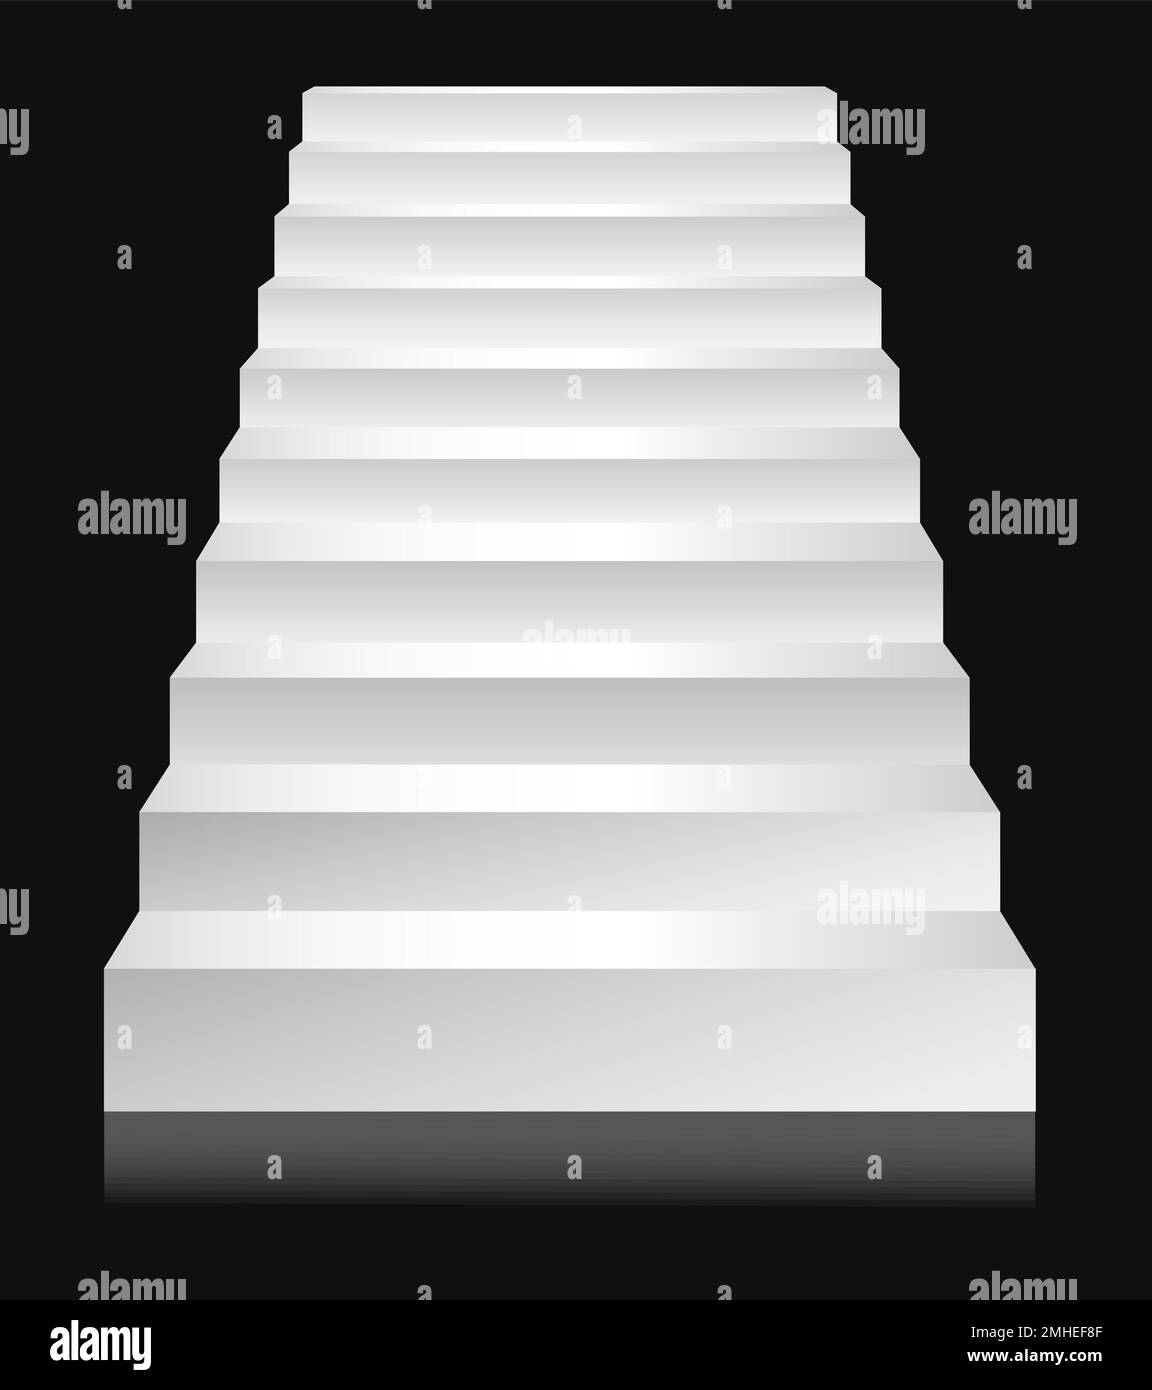 Scale o scale, dima per scala a podio, scale o scale Immagine e Vettoriale  - Alamy